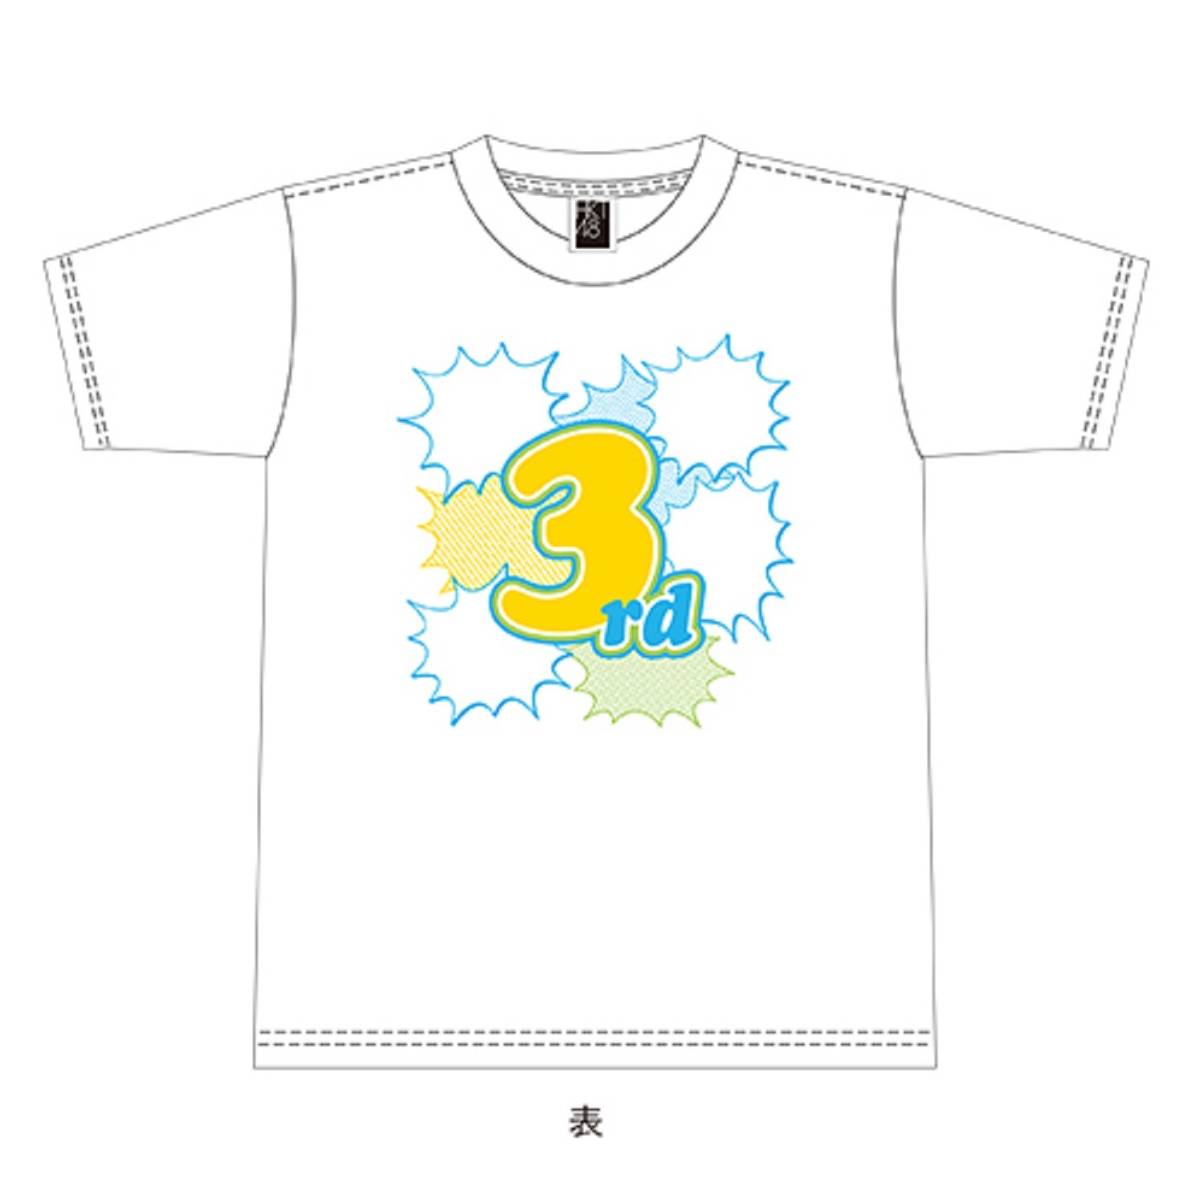 新品未開封 HKT48 Tシャツ 3周年記念 ホワイト 白 メンズ Men's Lサイズ Large_画像1